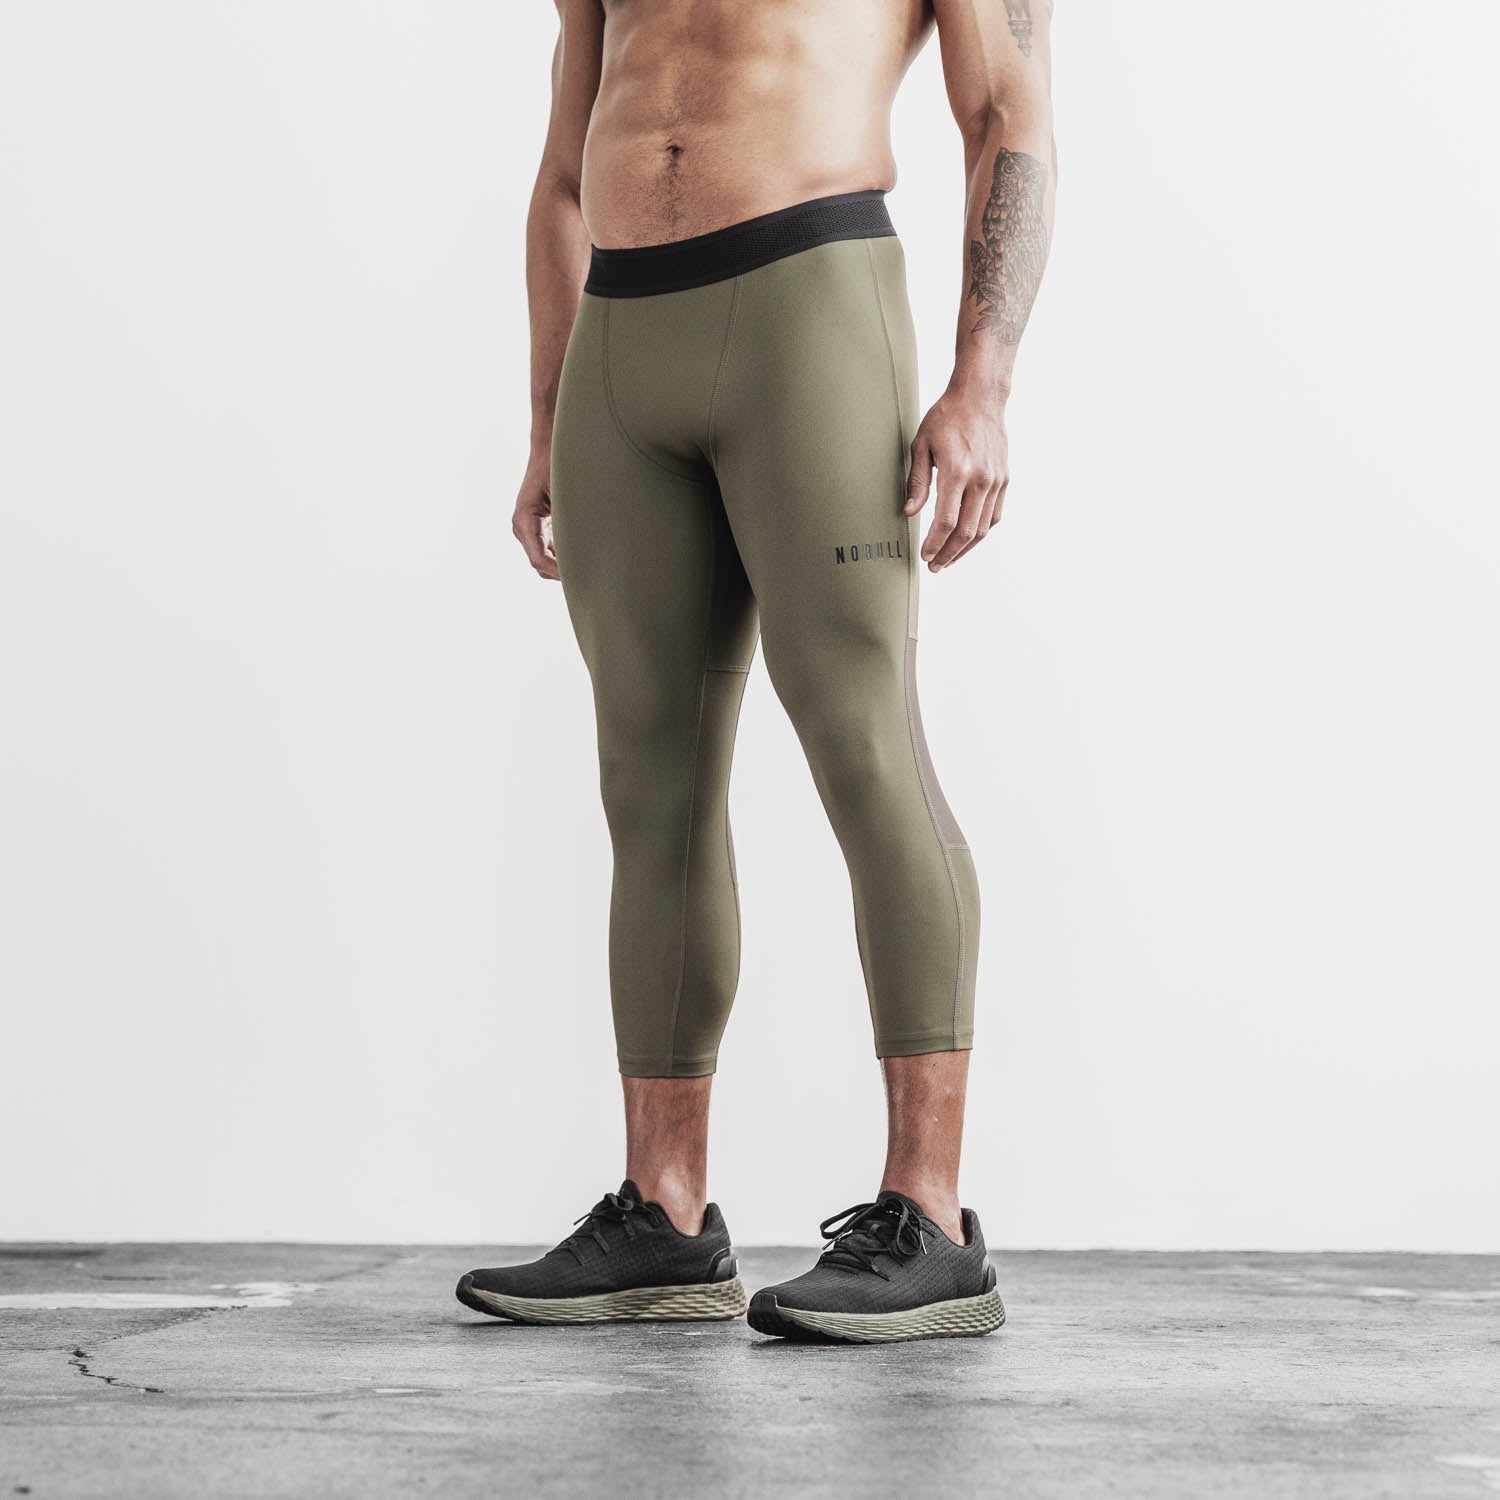 Yoga Apparel Manufacturer Custom Men's Dry Fit Compression